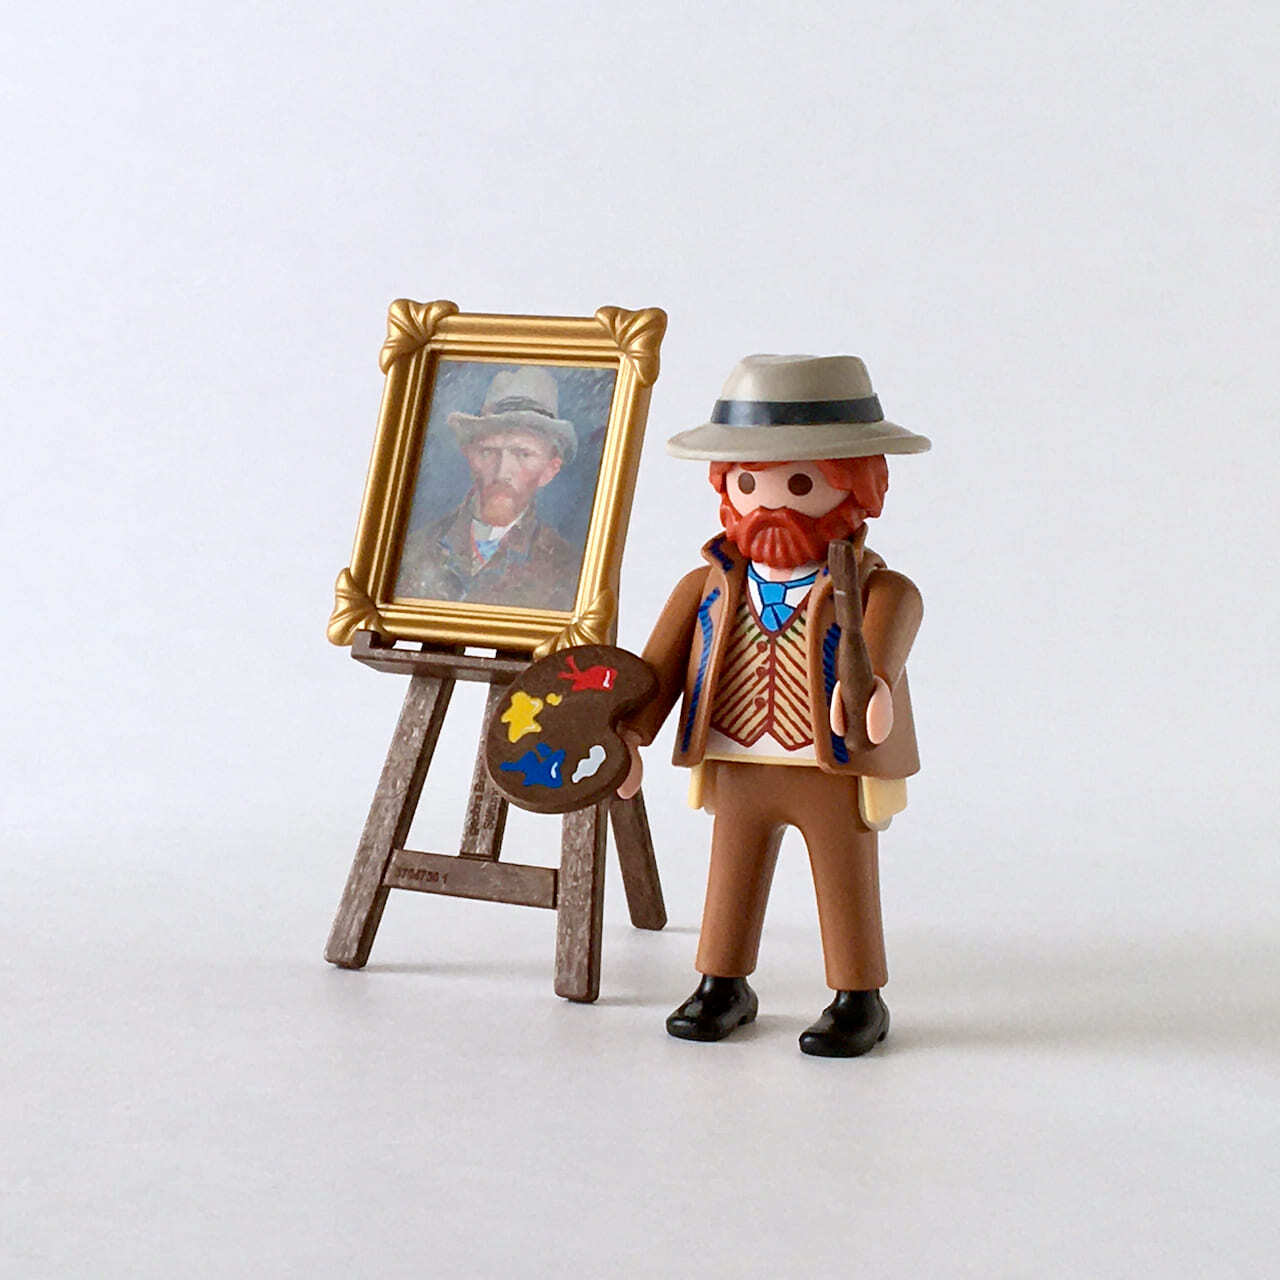 プレイモビル「ゴッホ自画像」70475｜Playmobil "Self-Portrait Van Gogh"